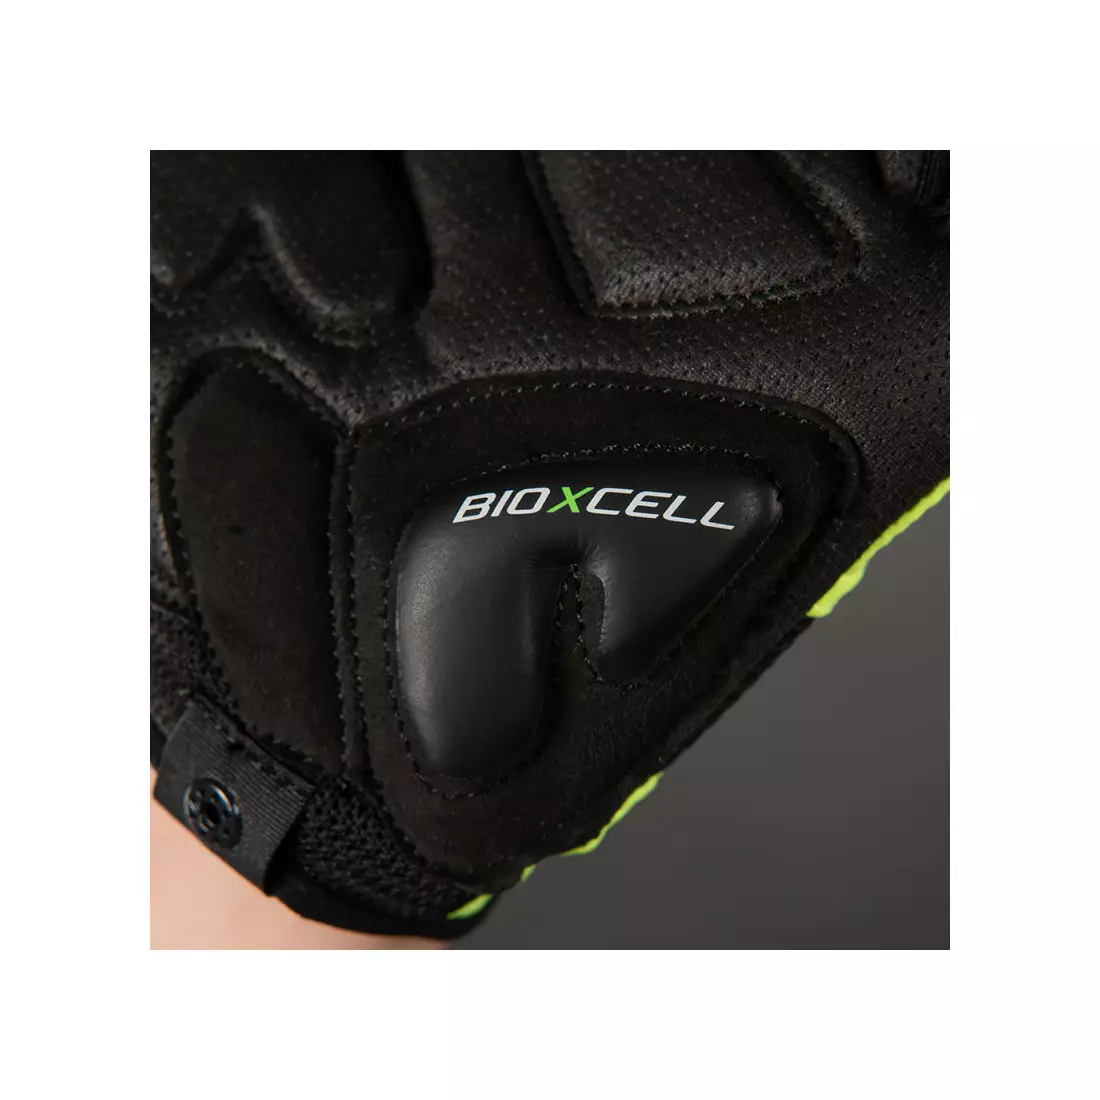 CHIBA cyklistické rukavice bioxcell neónovo žltá 3060120